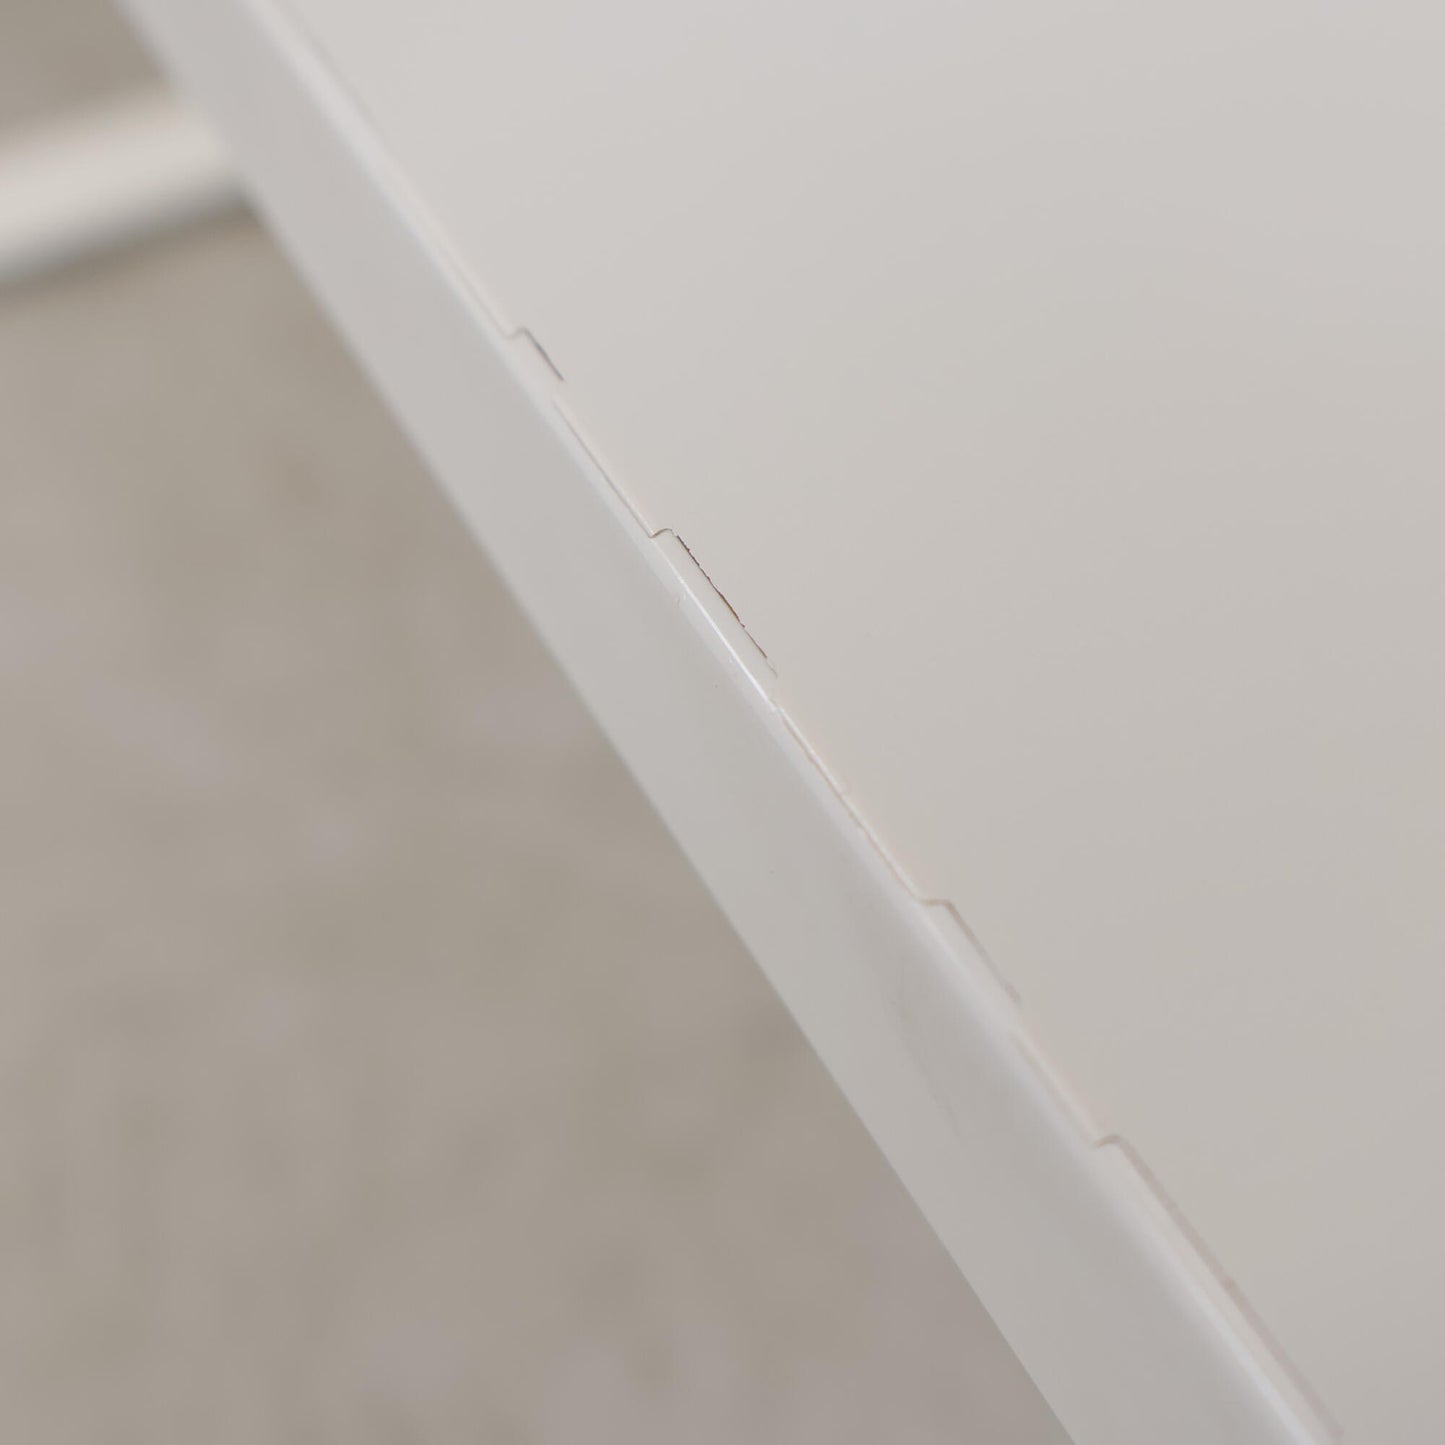 Kvalitetssikret | 120x70, IKEA manuelt hev/senk skrivebord